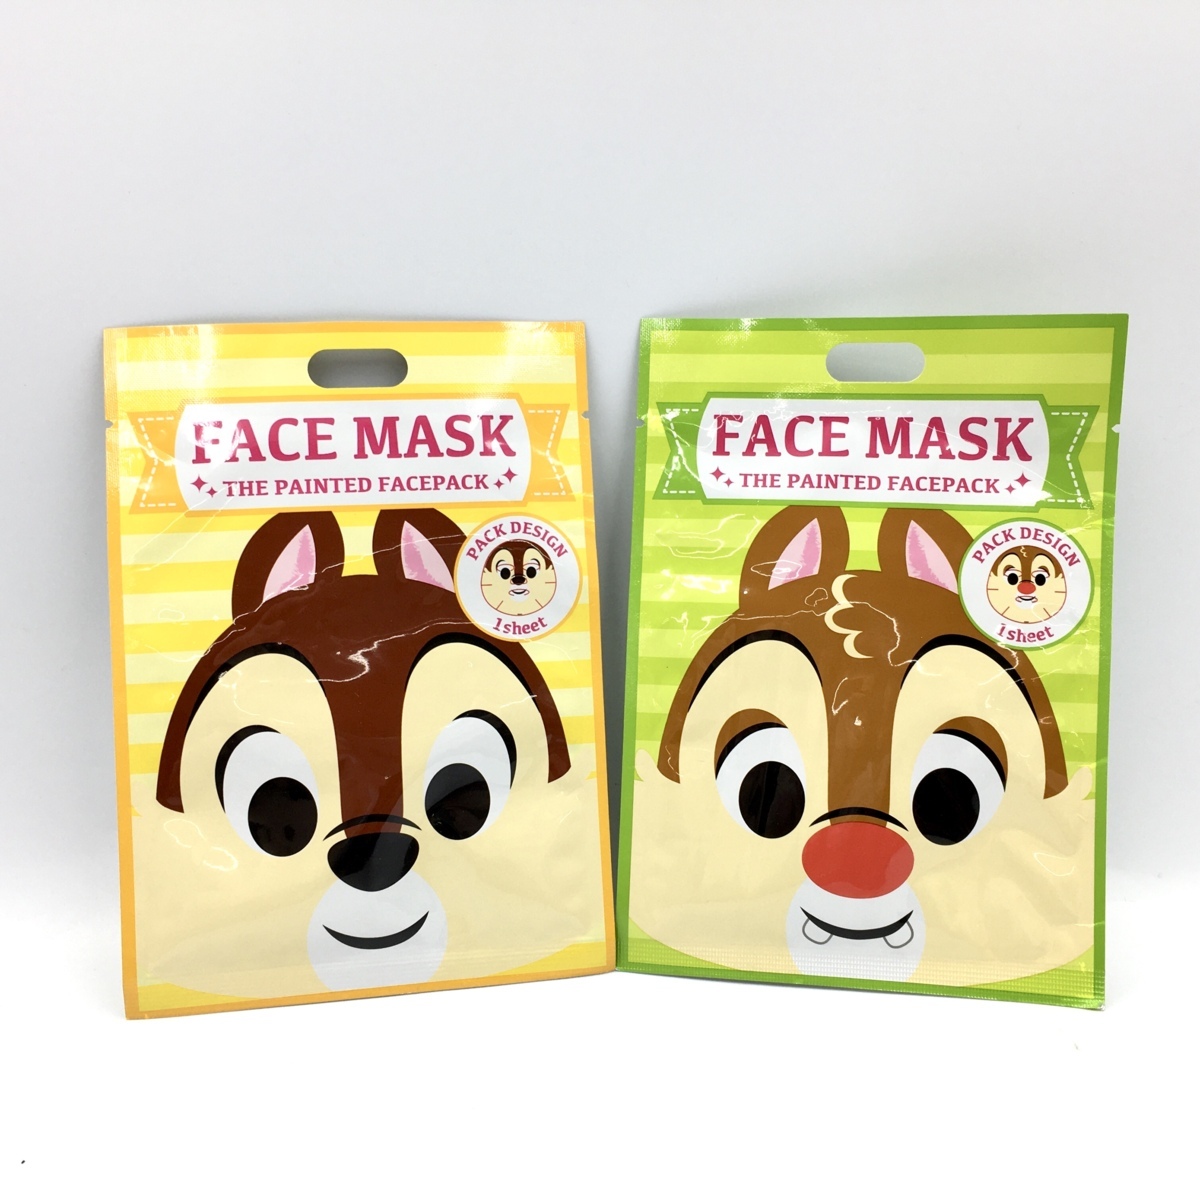 Disney ディズニーストア フェイスマスク チップ デール セット シート状美容マスク 各1枚 ネコポス可 パック フェイスマスク 売買されたオークション情報 Yahooの商品情報をアーカイブ公開 オークファン Aucfan Com